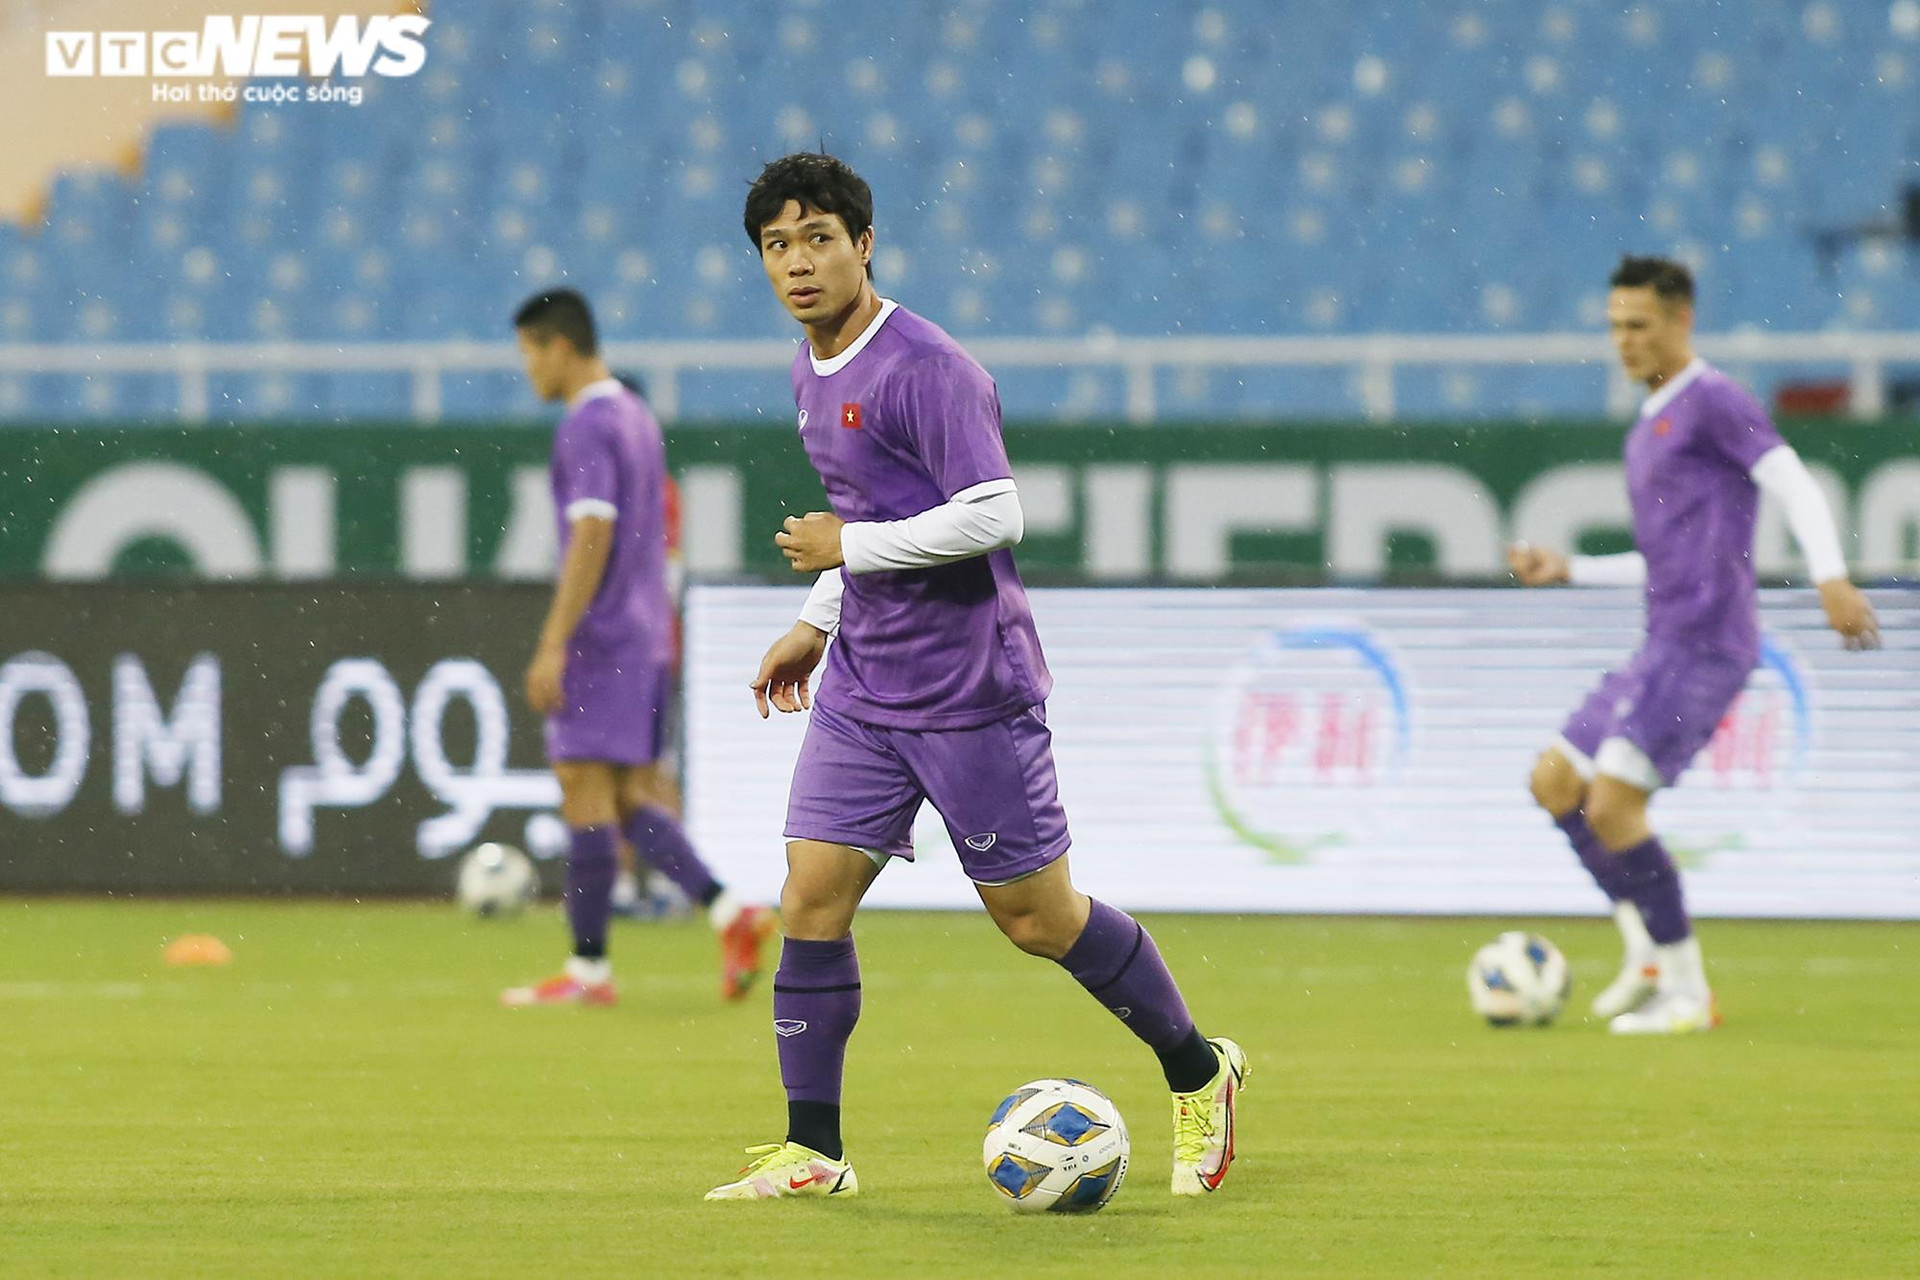 HLV Park Hang Seo đăm chiêu trước ngày tuyển Việt Nam đấu Oman - 8